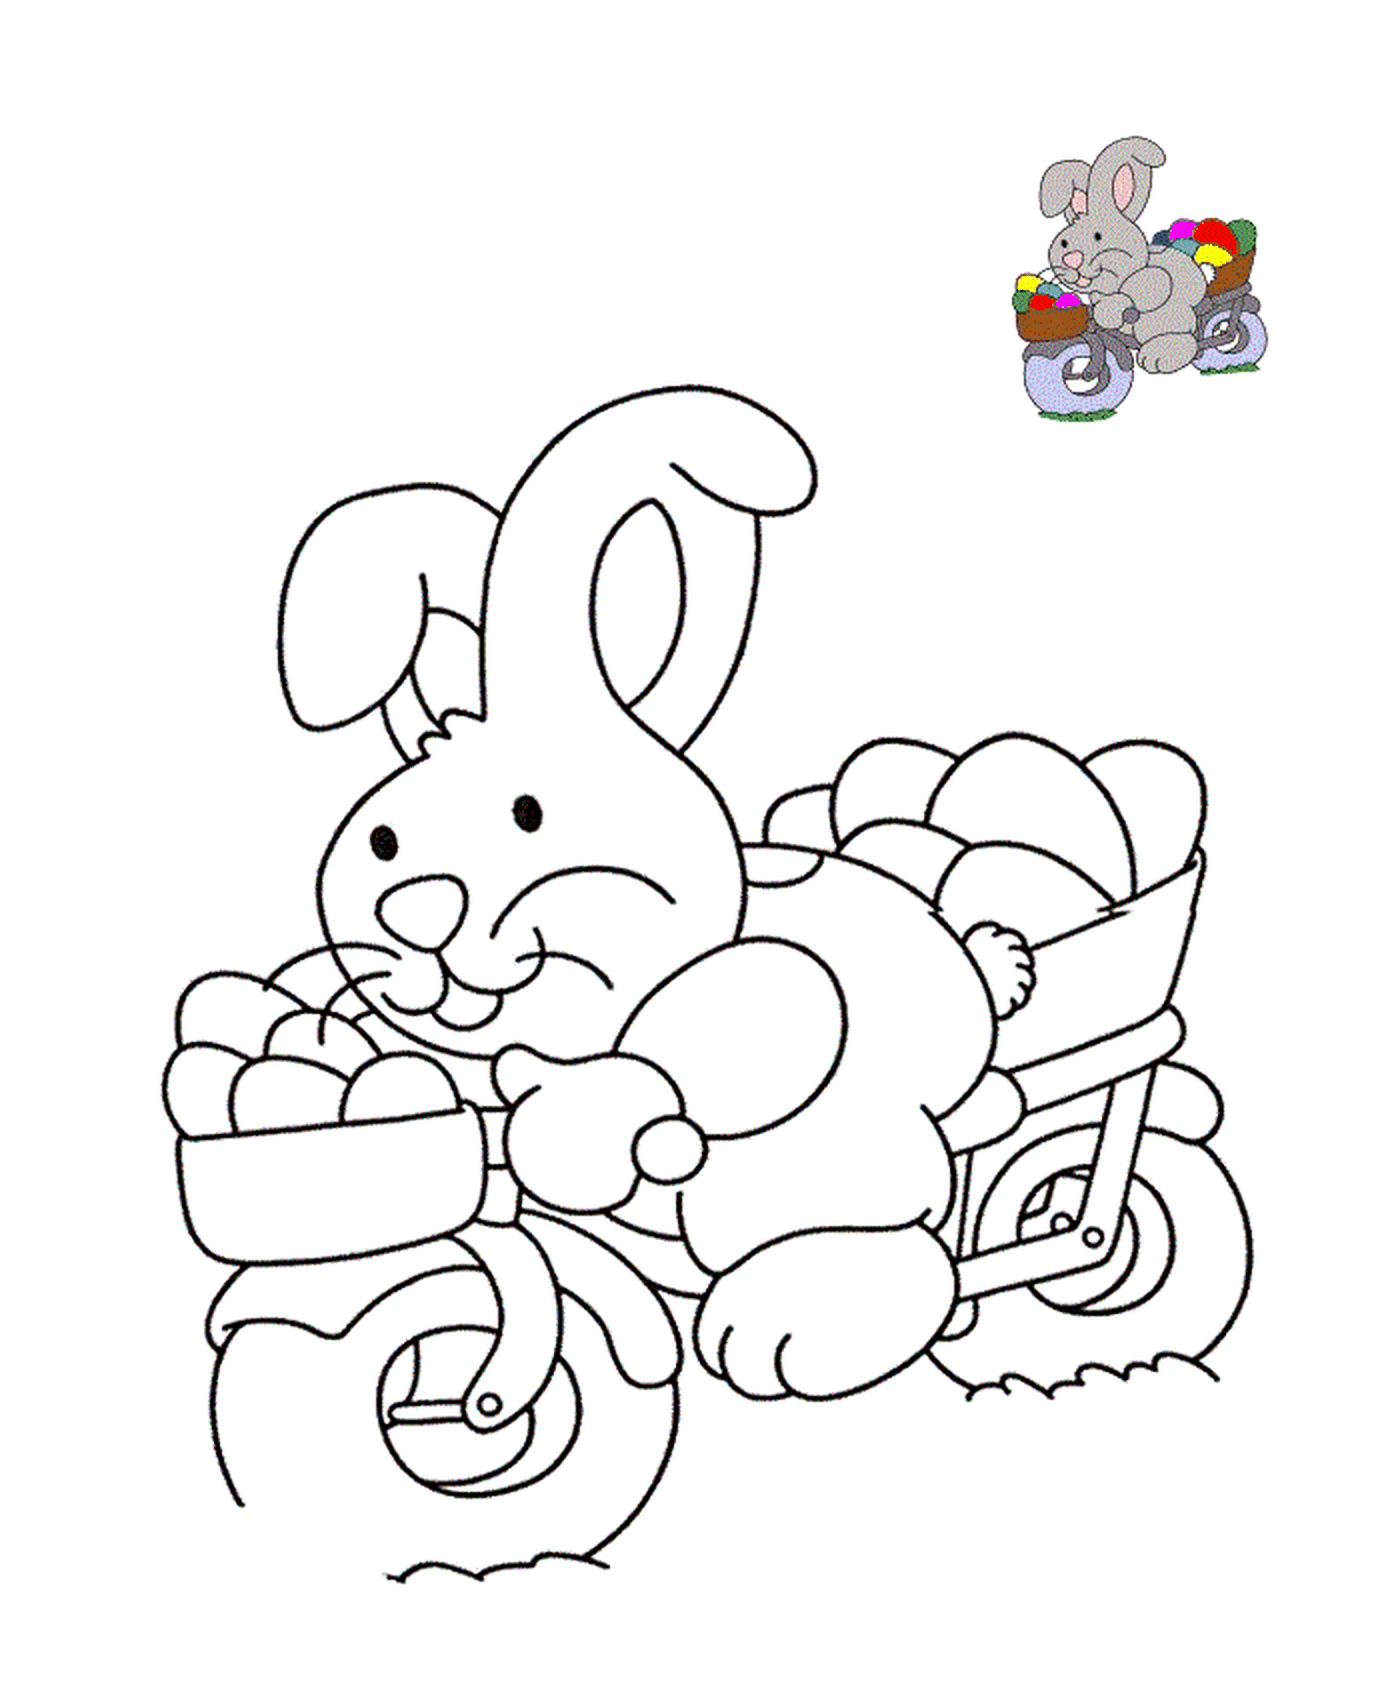  Rabbit picking Easter eggs by bike 